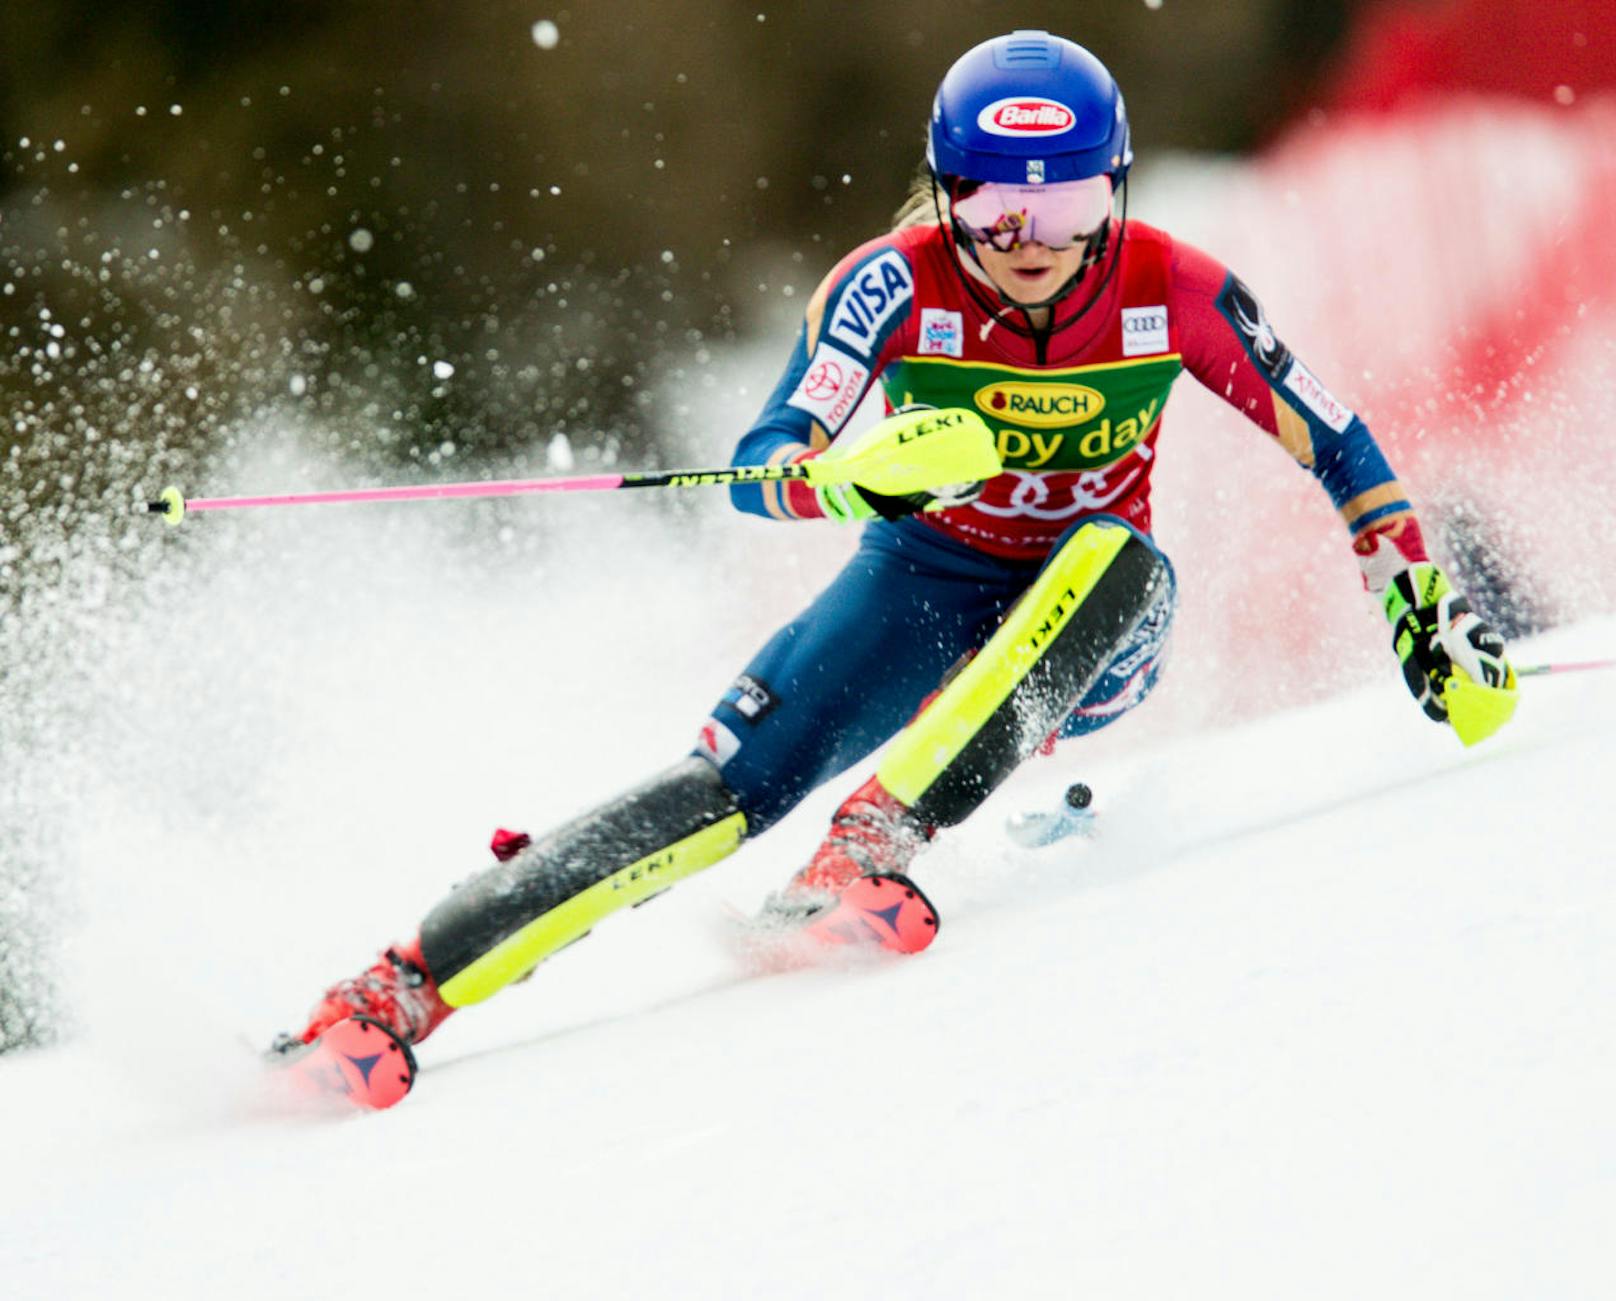 <b>Mikaela Shiffrin (Ski Alpin): 
</b>Mit 18 Jahren kürte sich die US-Amerikanerin bei den Olympischen Spielen 2014 zur jüngsten Slalom-Olympiasiegerin aller Zeiten. Vier Jahre später führt am Weg zu Gold erneut kein Weg an ihr vorbei - egal ob im Slalom oder Riesentorlauf.